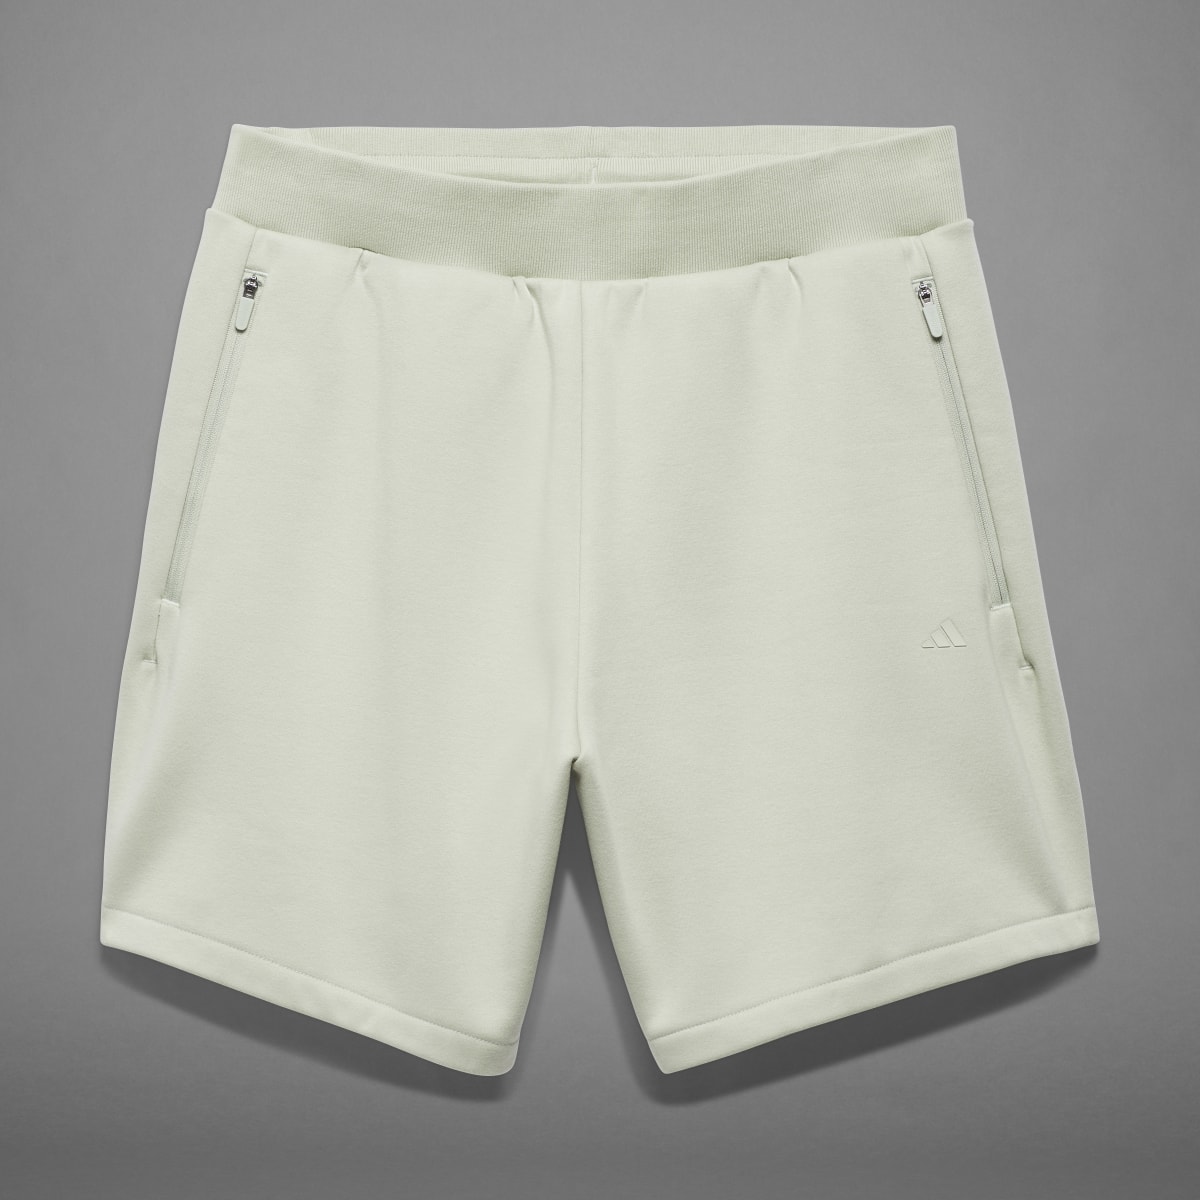 Adidas Shorts de Básquet adidas. 10